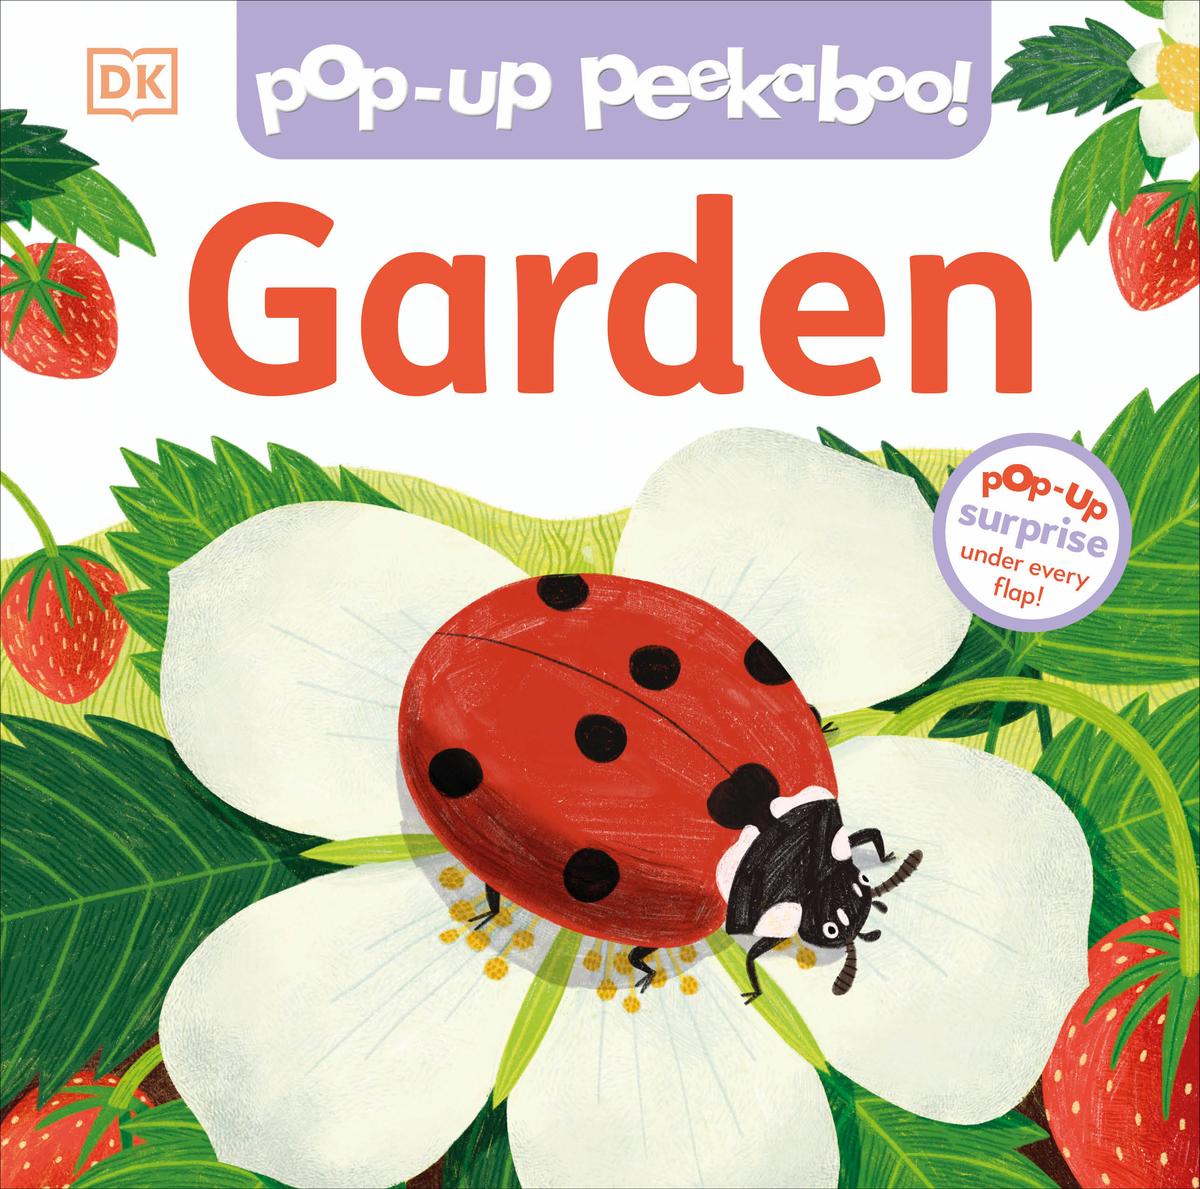 Pop-Up Peekaboo! Garden - Pop-Up Surprise Under Every Flap!